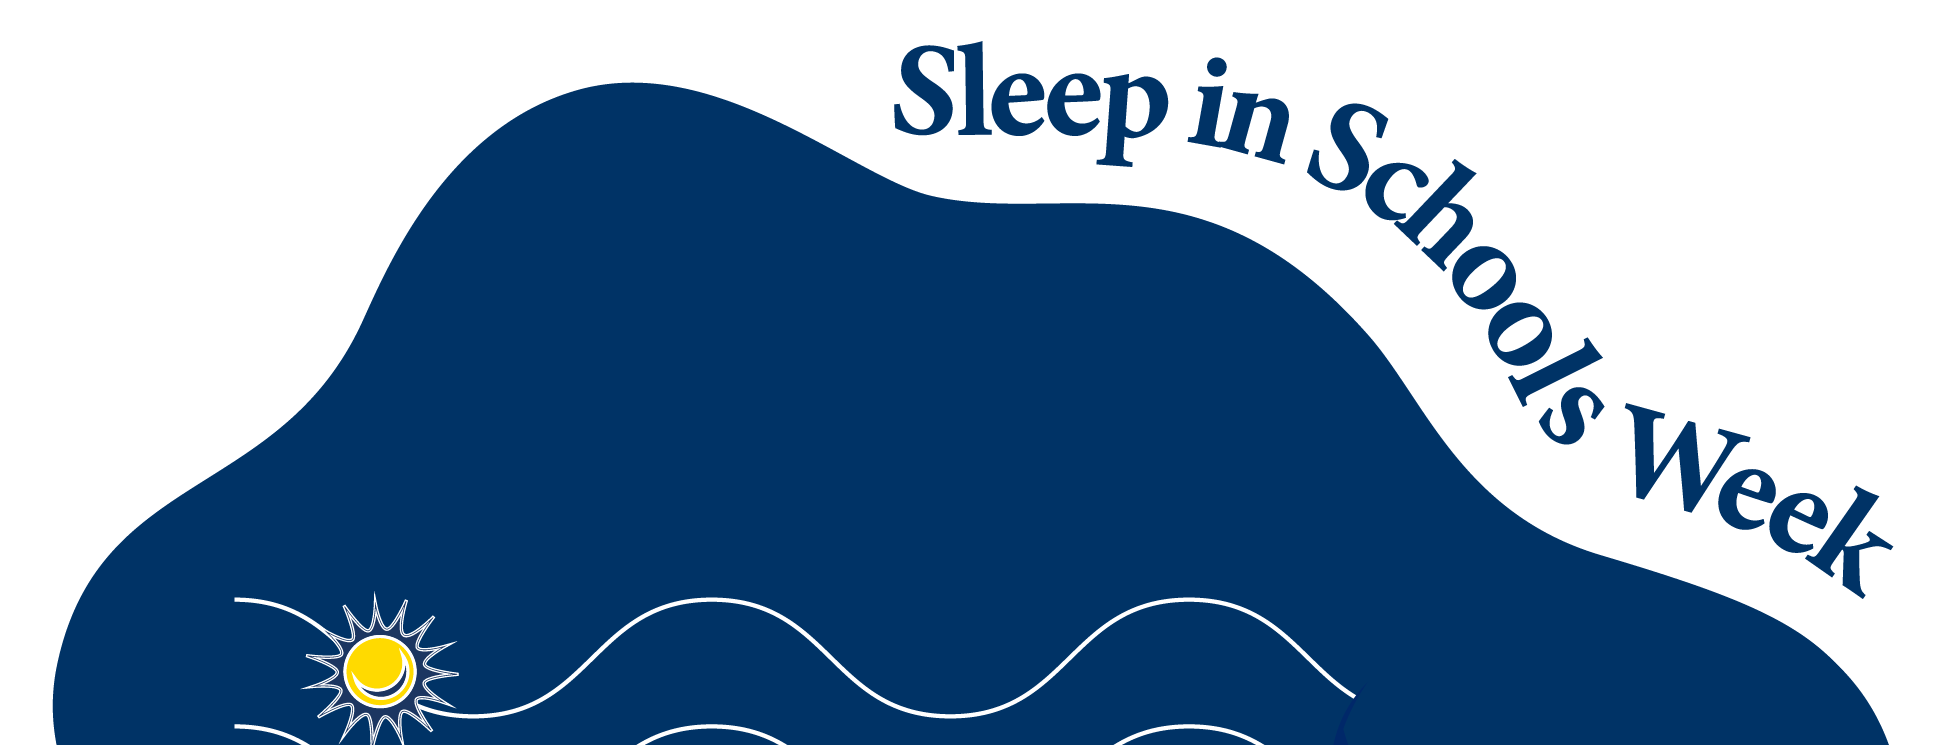 Sleep in schools week banner